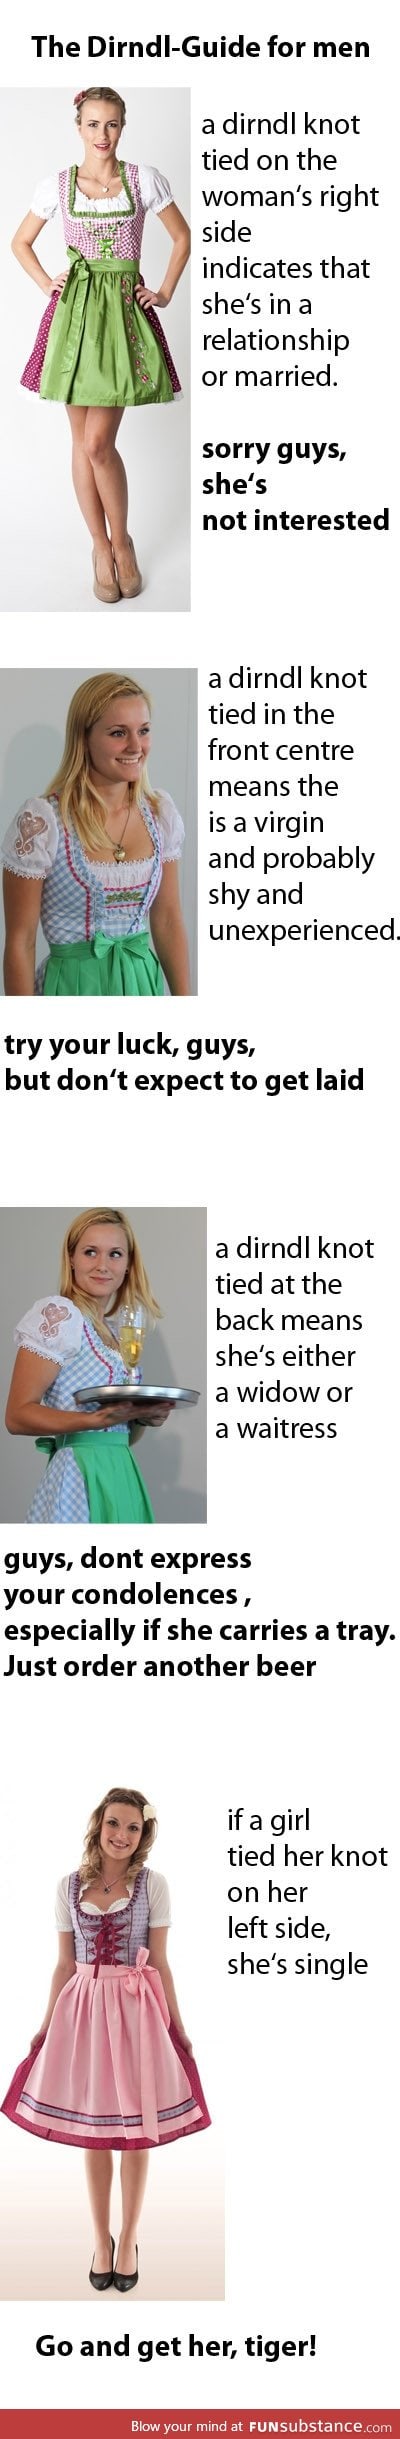 A Dirndl-Guide for men